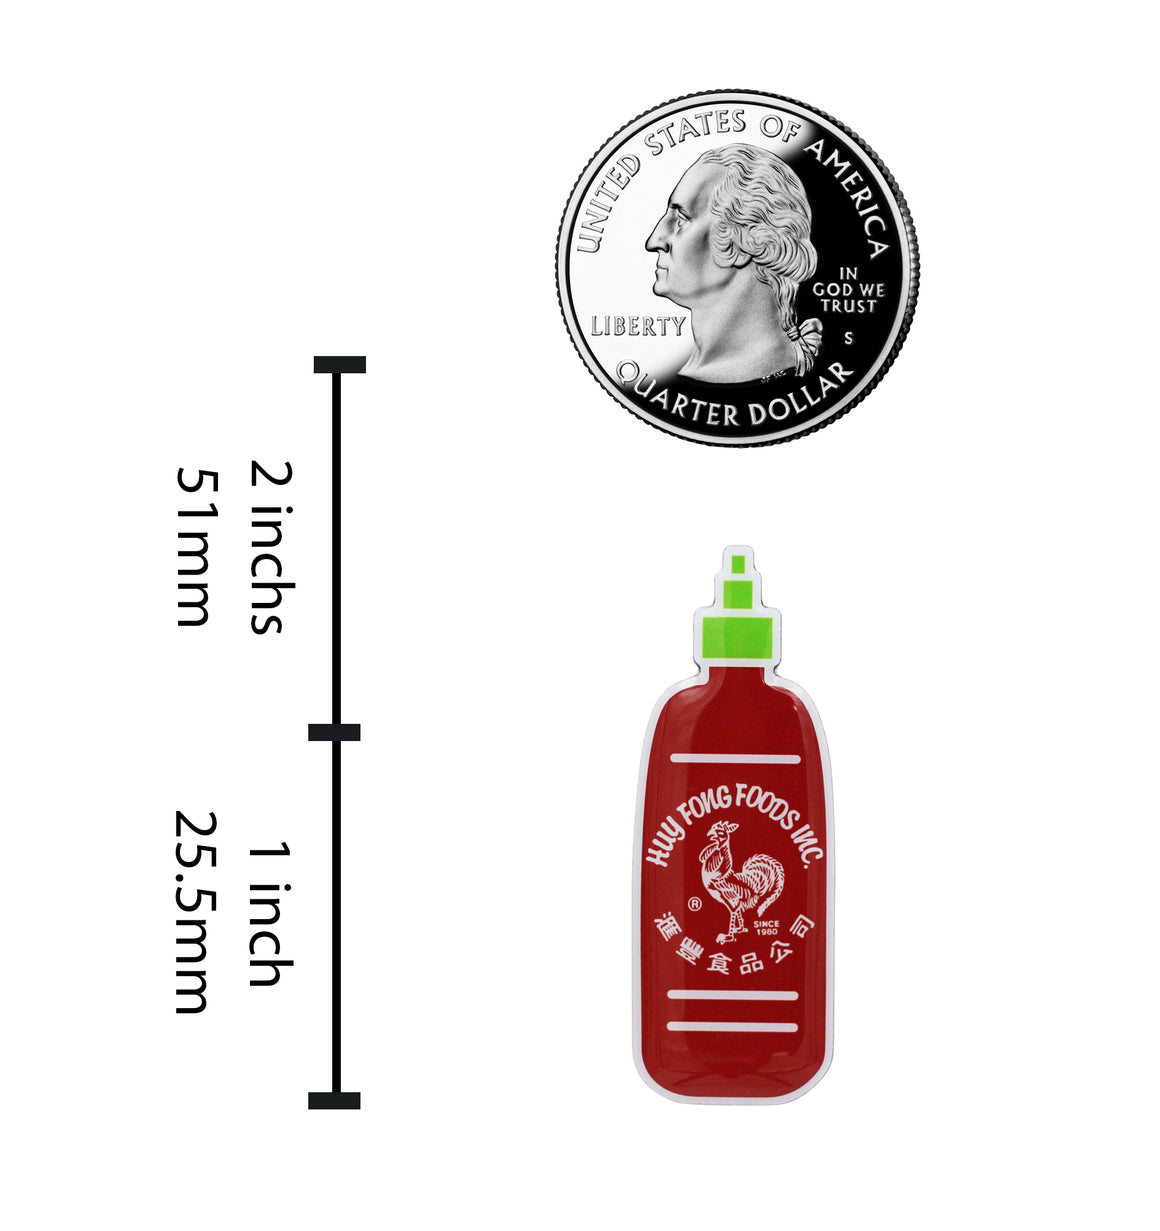 Sriracha Pin